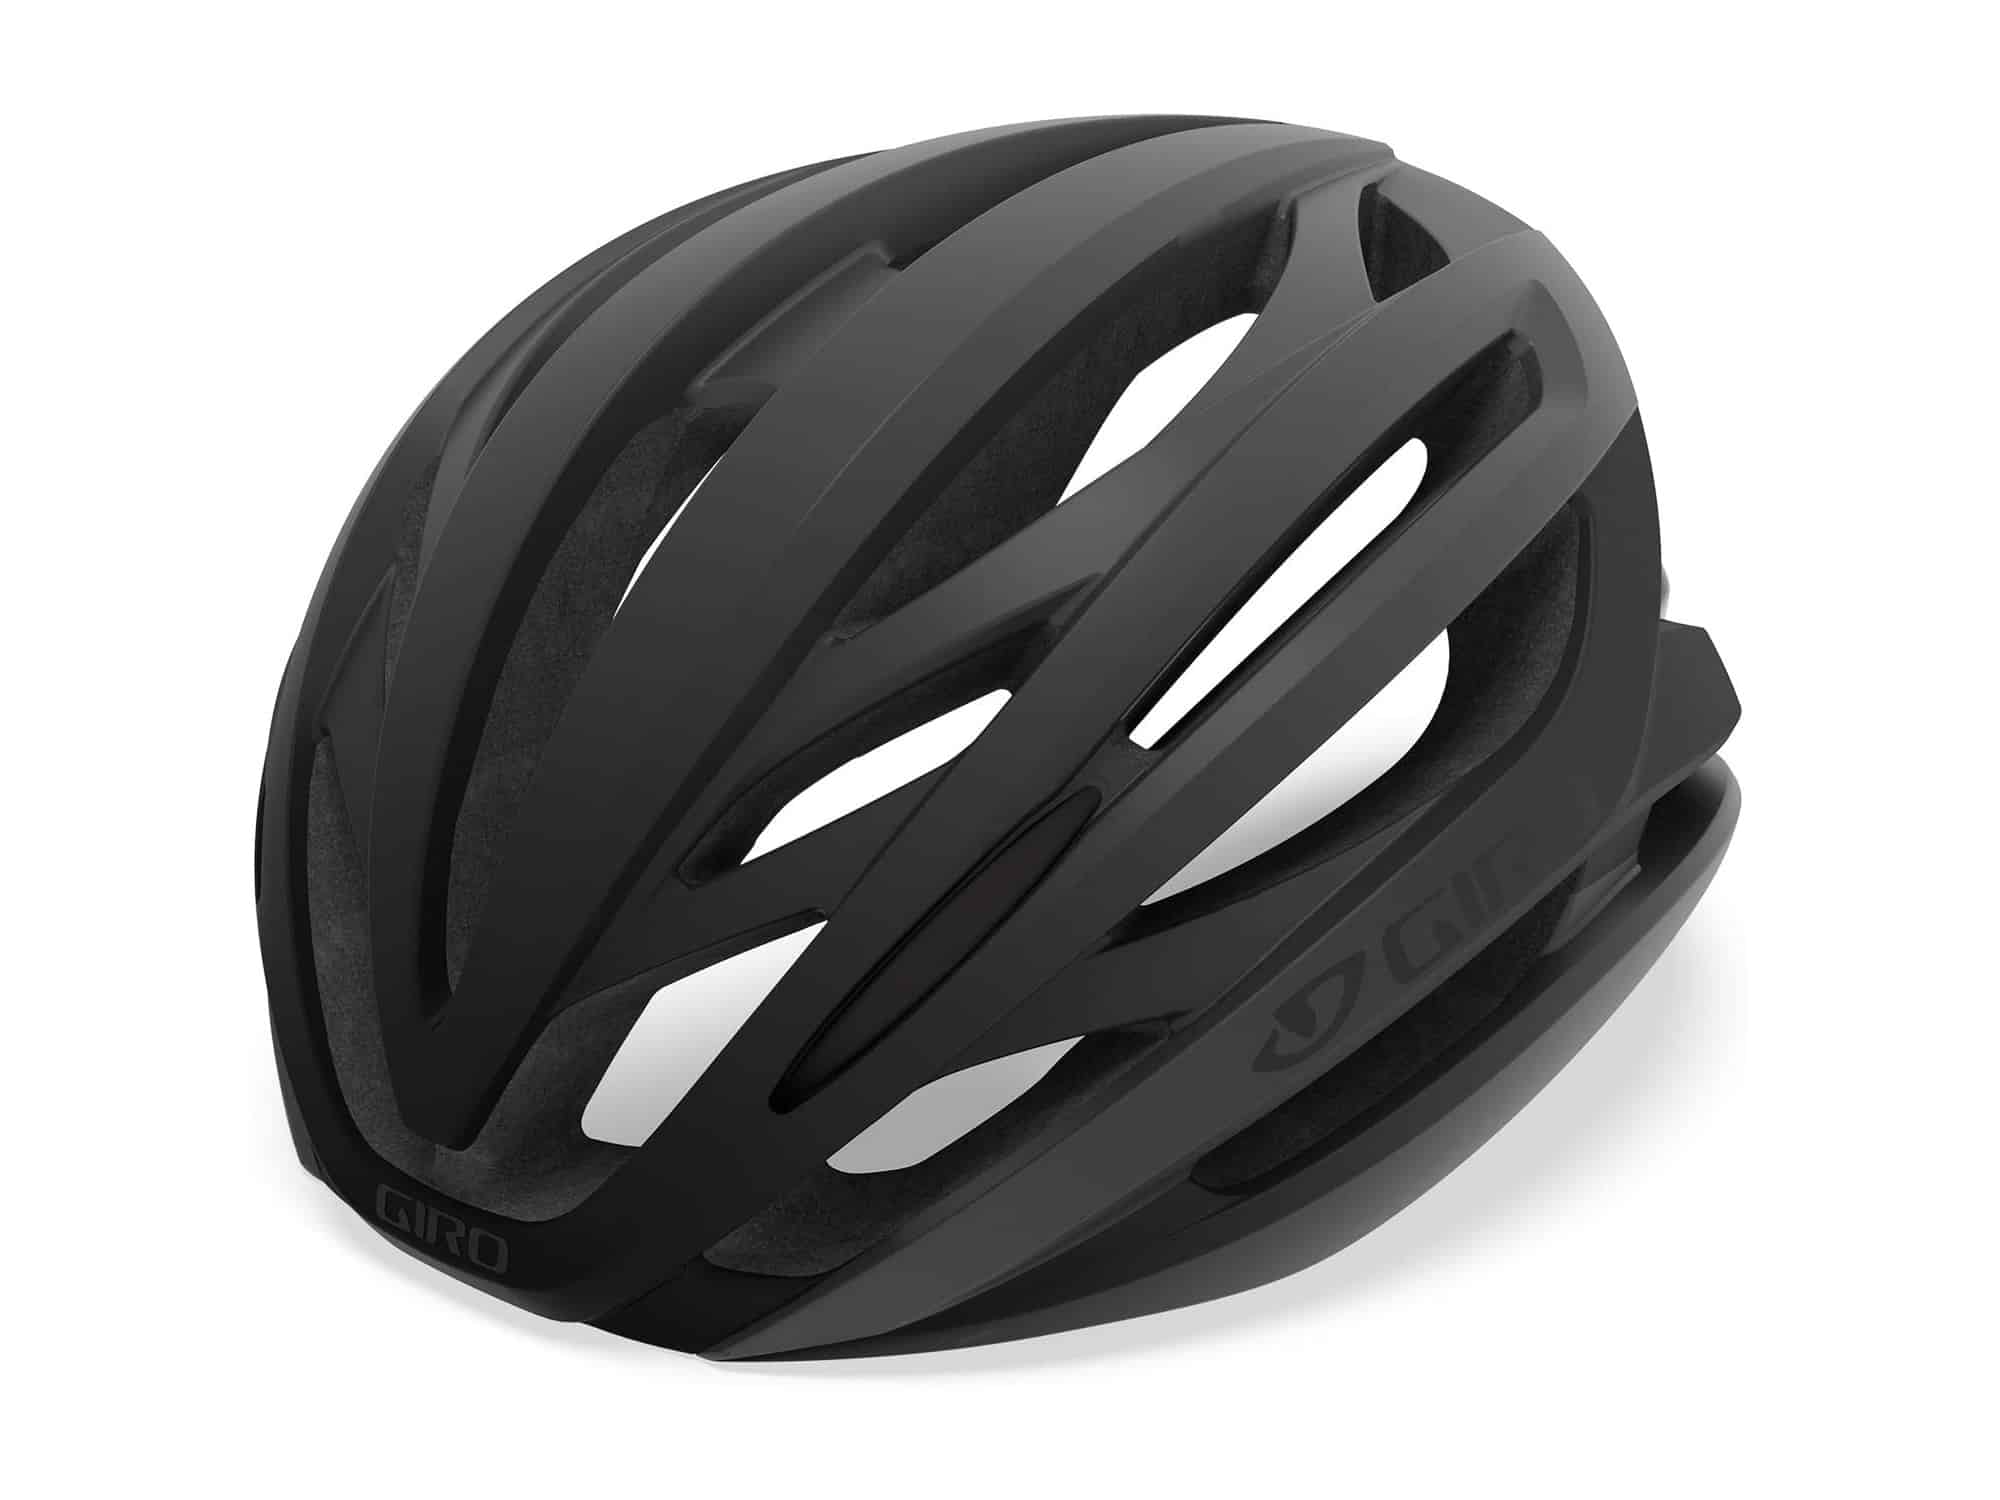 Giro Syntax MIPS Adult Road Bike Helmet